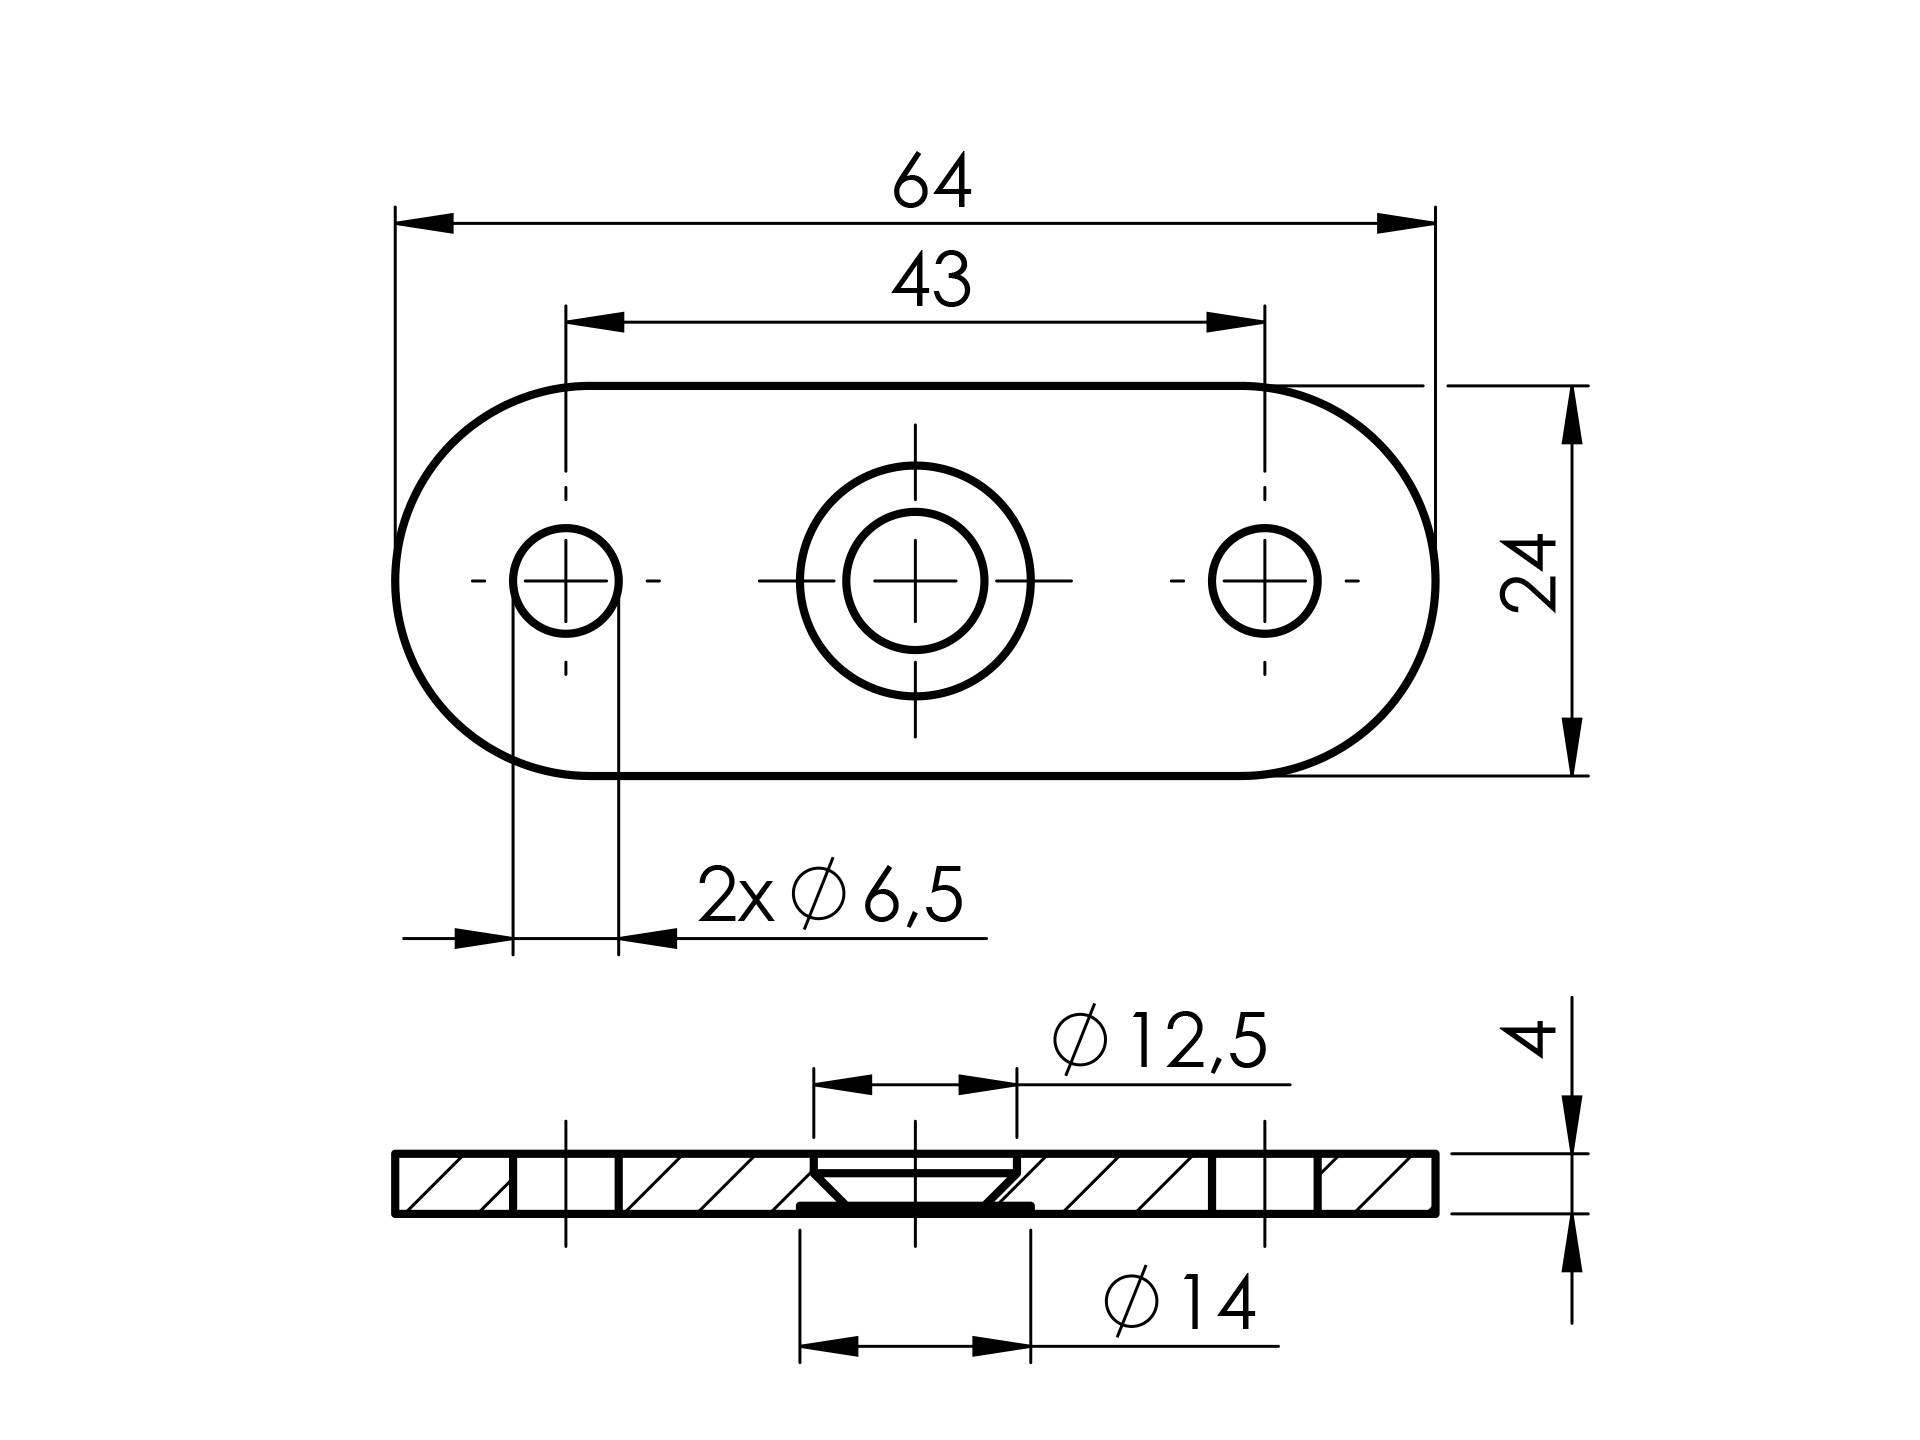 Handlauf-Anschlussplatte aus Edelstahl mit 180° Winkel für Formrohre